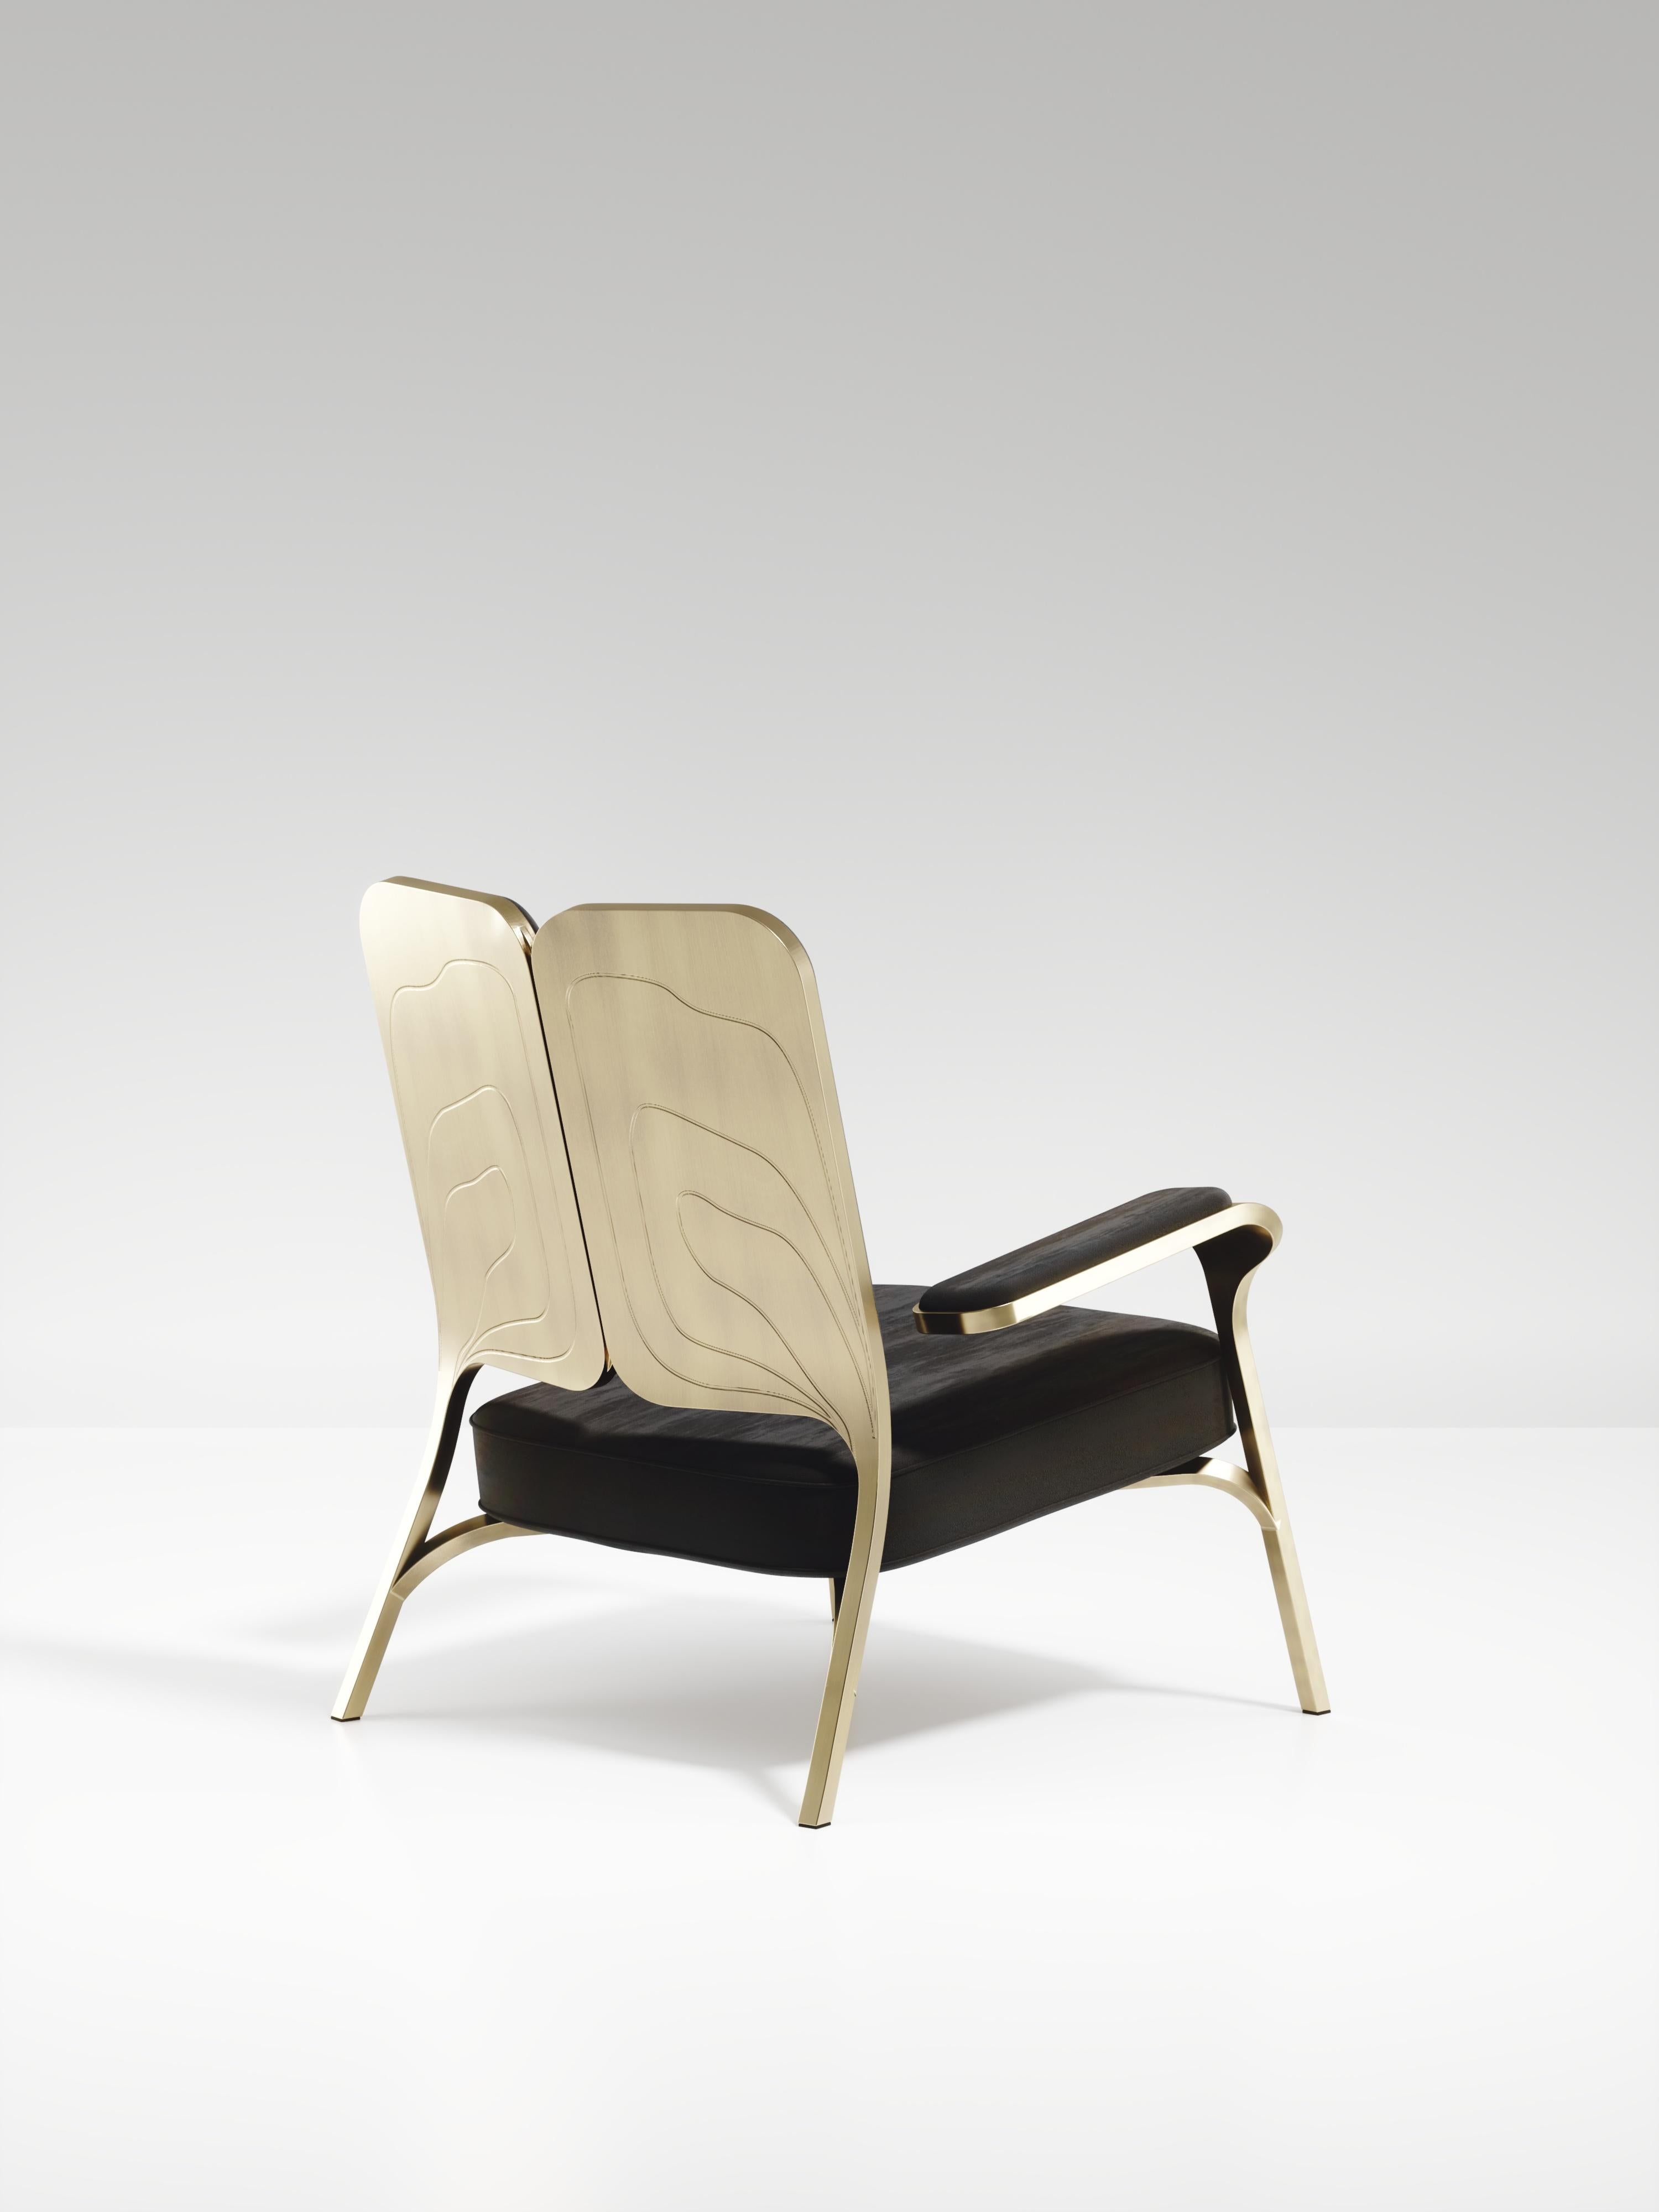 L'ensemble de 2 fauteuils Gingko de R&Y Augousti sont des pièces élégantes et fantaisistes. Les pièces rembourrées en velours noir offrent un confort tout en dégageant une esthétique ludique dans son clin d'œil abstrait à un papillon avec la forme